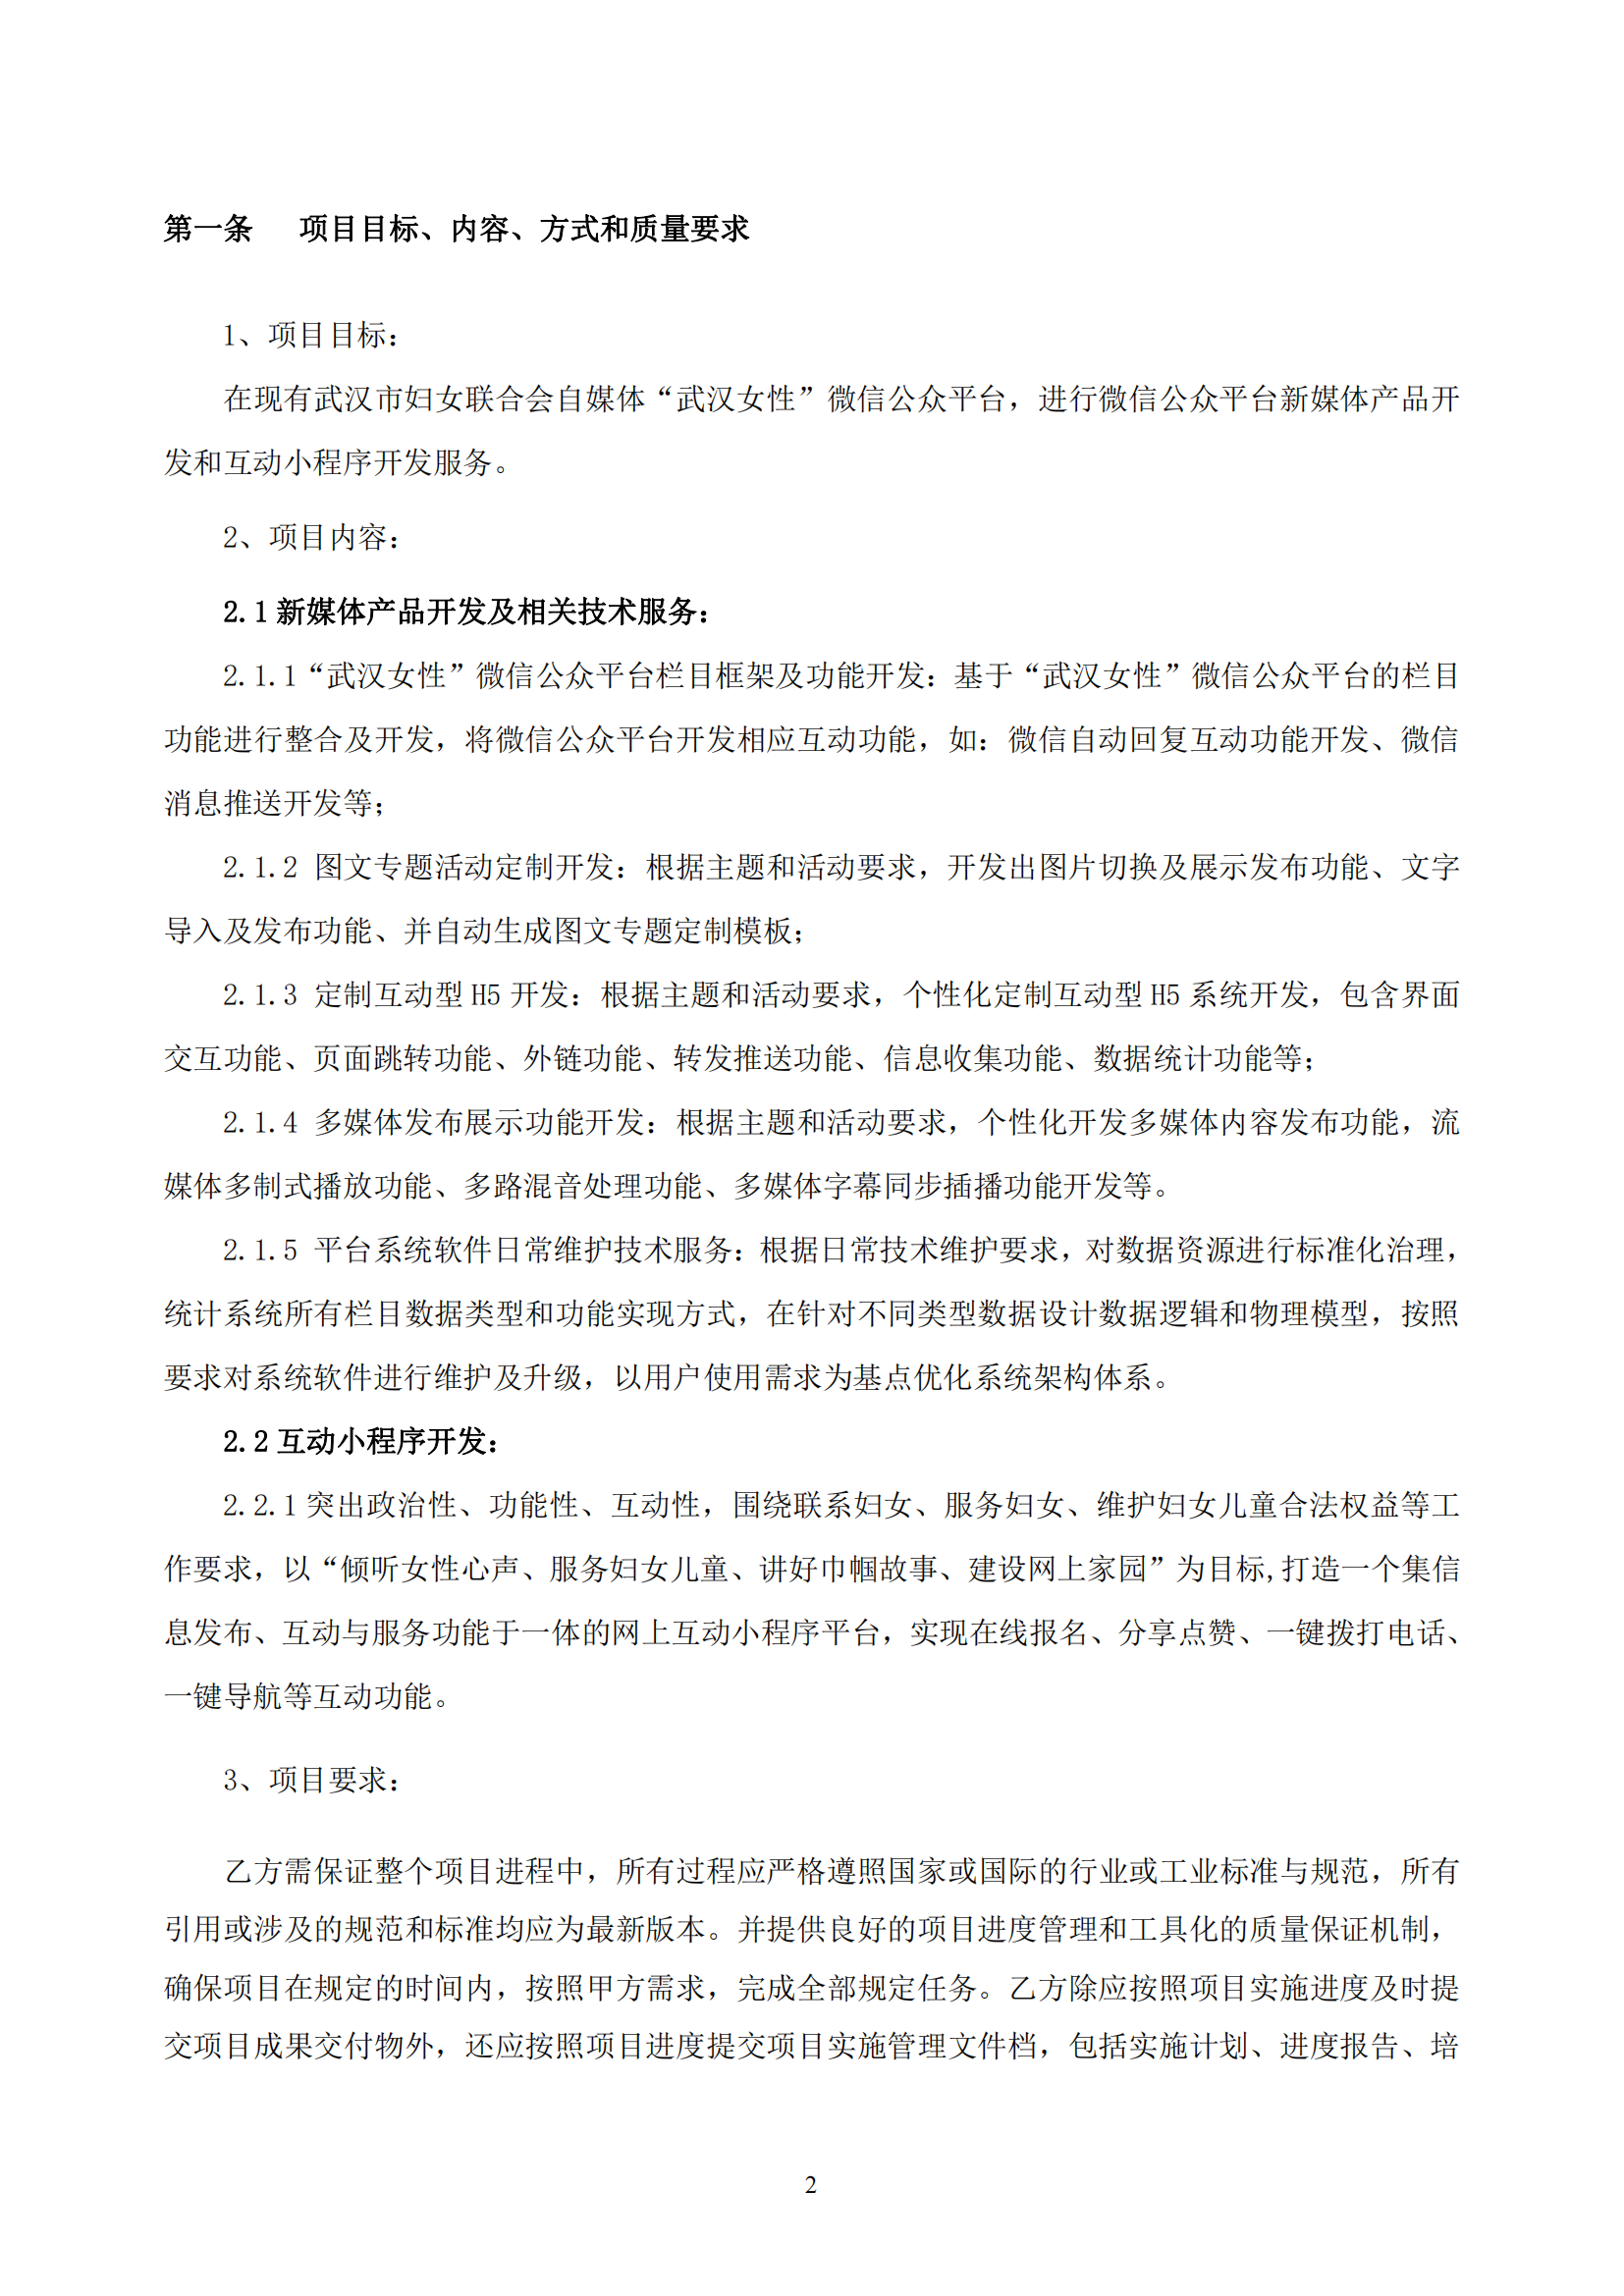 武汉妇联官方微信新媒体运维及改版升级项目合同_02.png